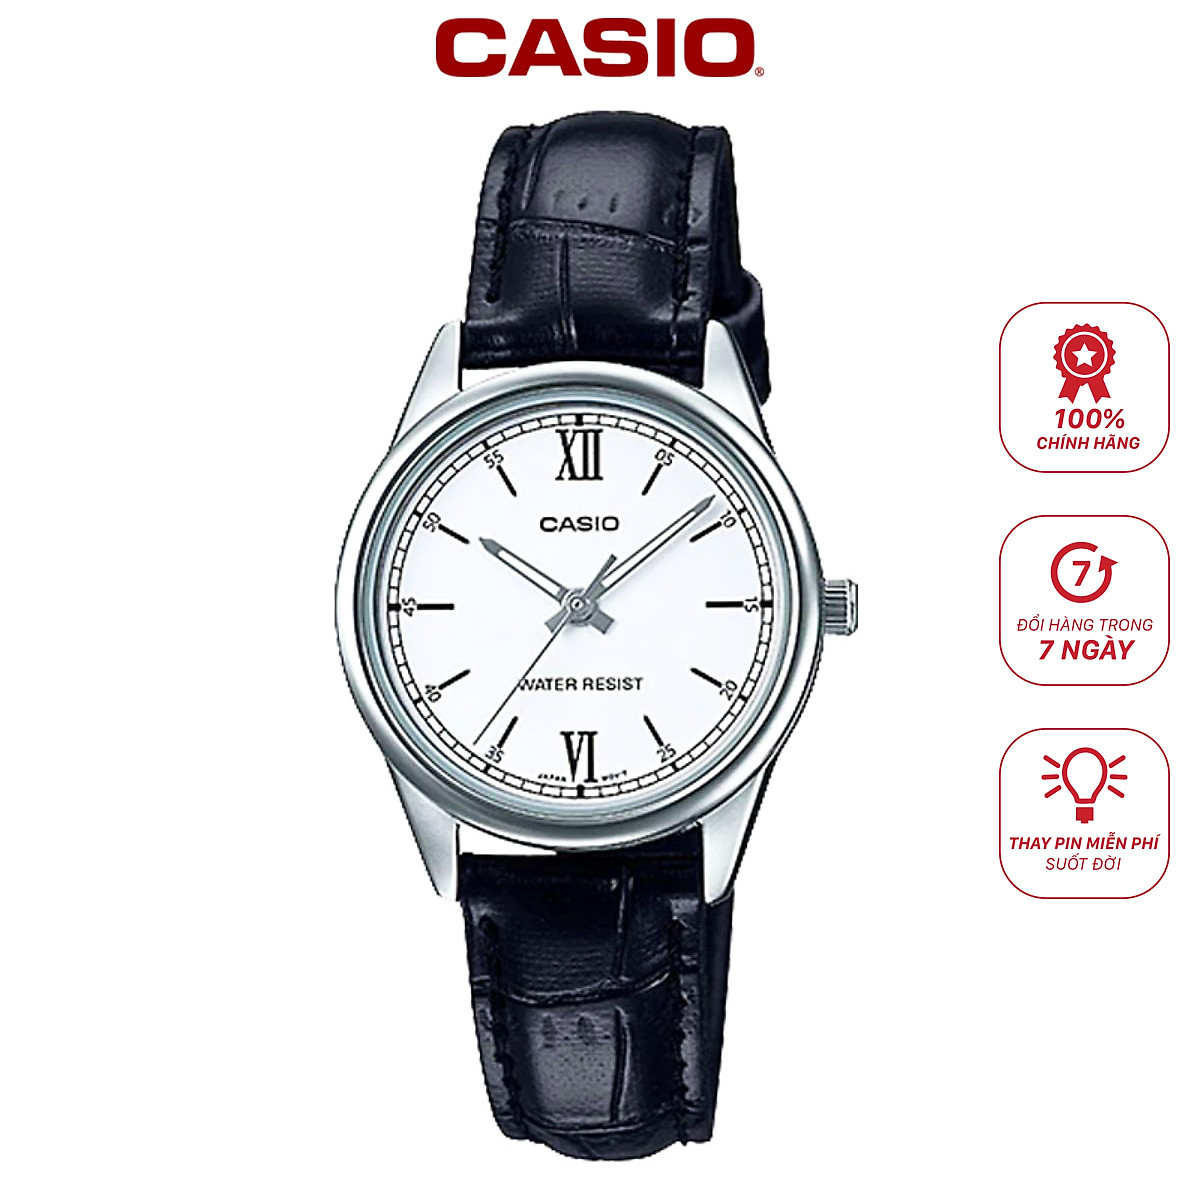 Khám phá đồng hồ Casio LTP-V005L-7B2UDF